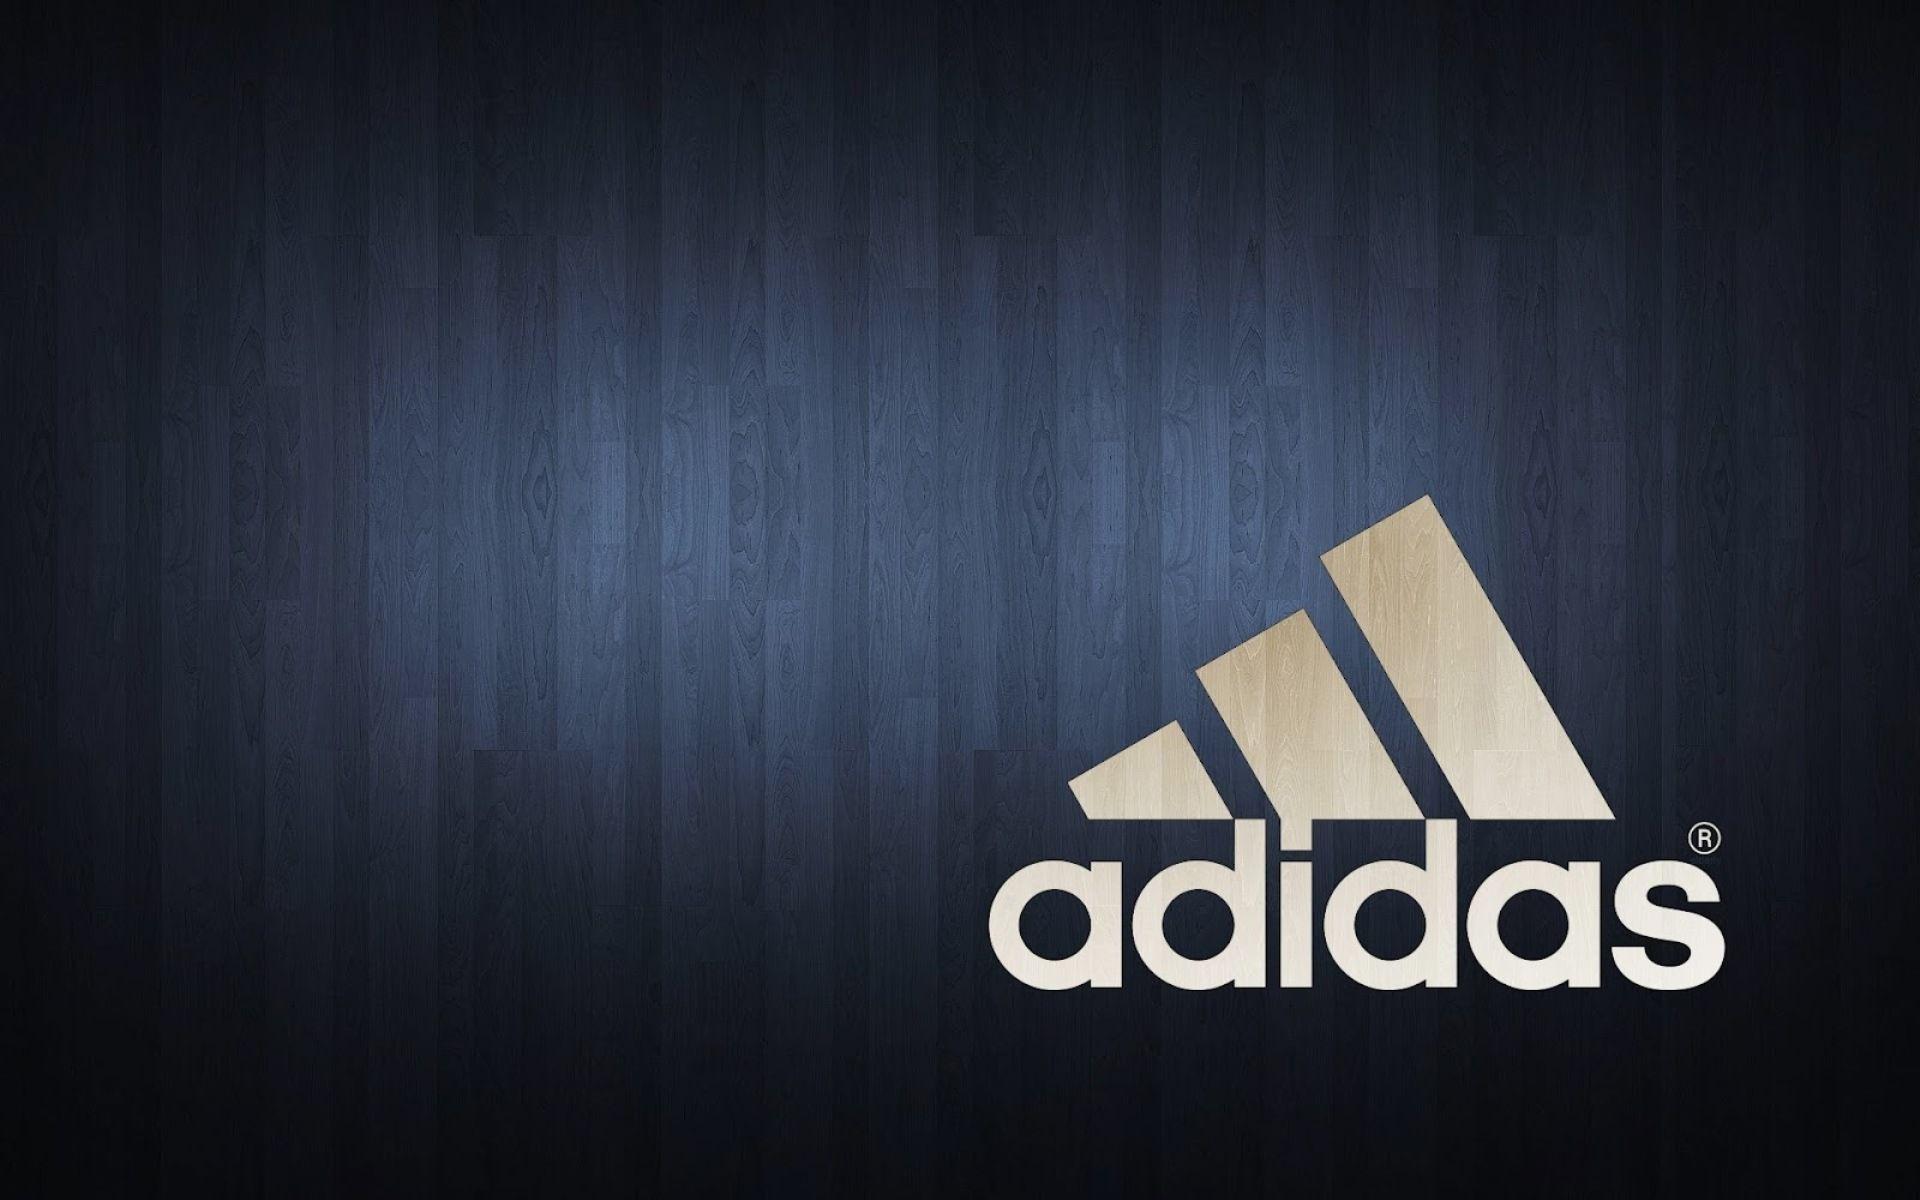 Adidas Logo Wallpapers 2015 Wallpaper Cave HD Wallpapers Download Free Images Wallpaper [wallpaper981.blogspot.com]